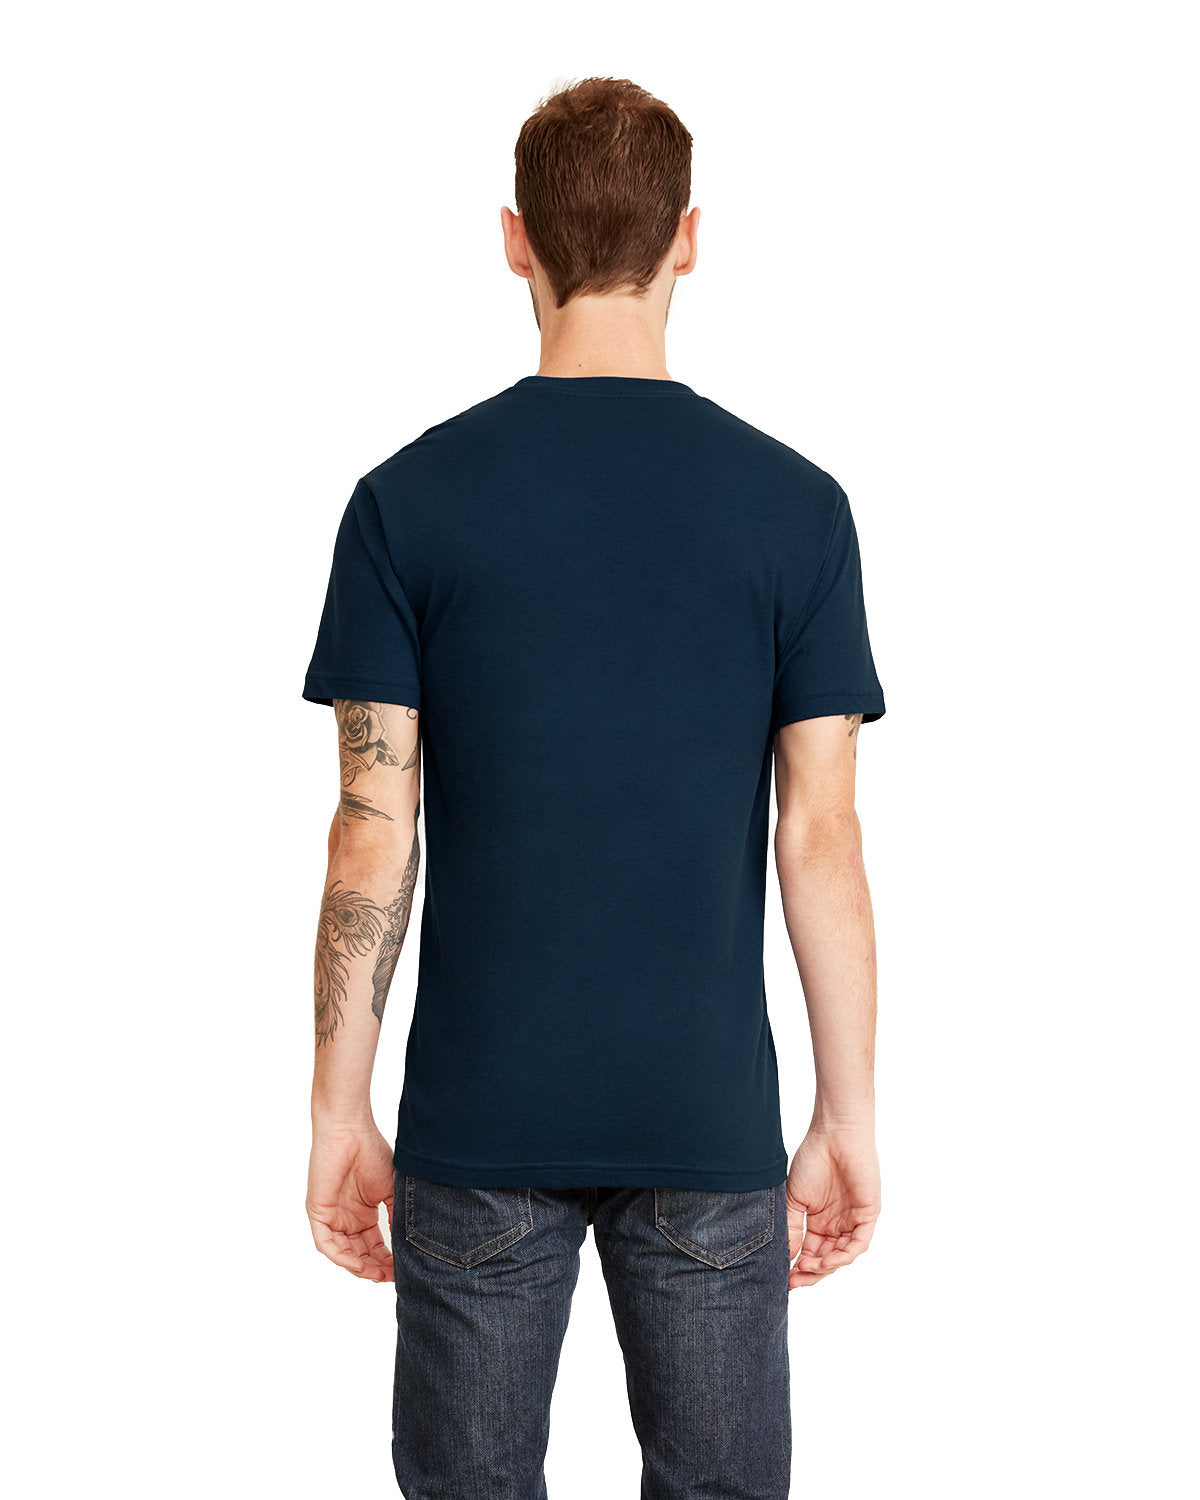 UNISEX Pocket T-Shirt